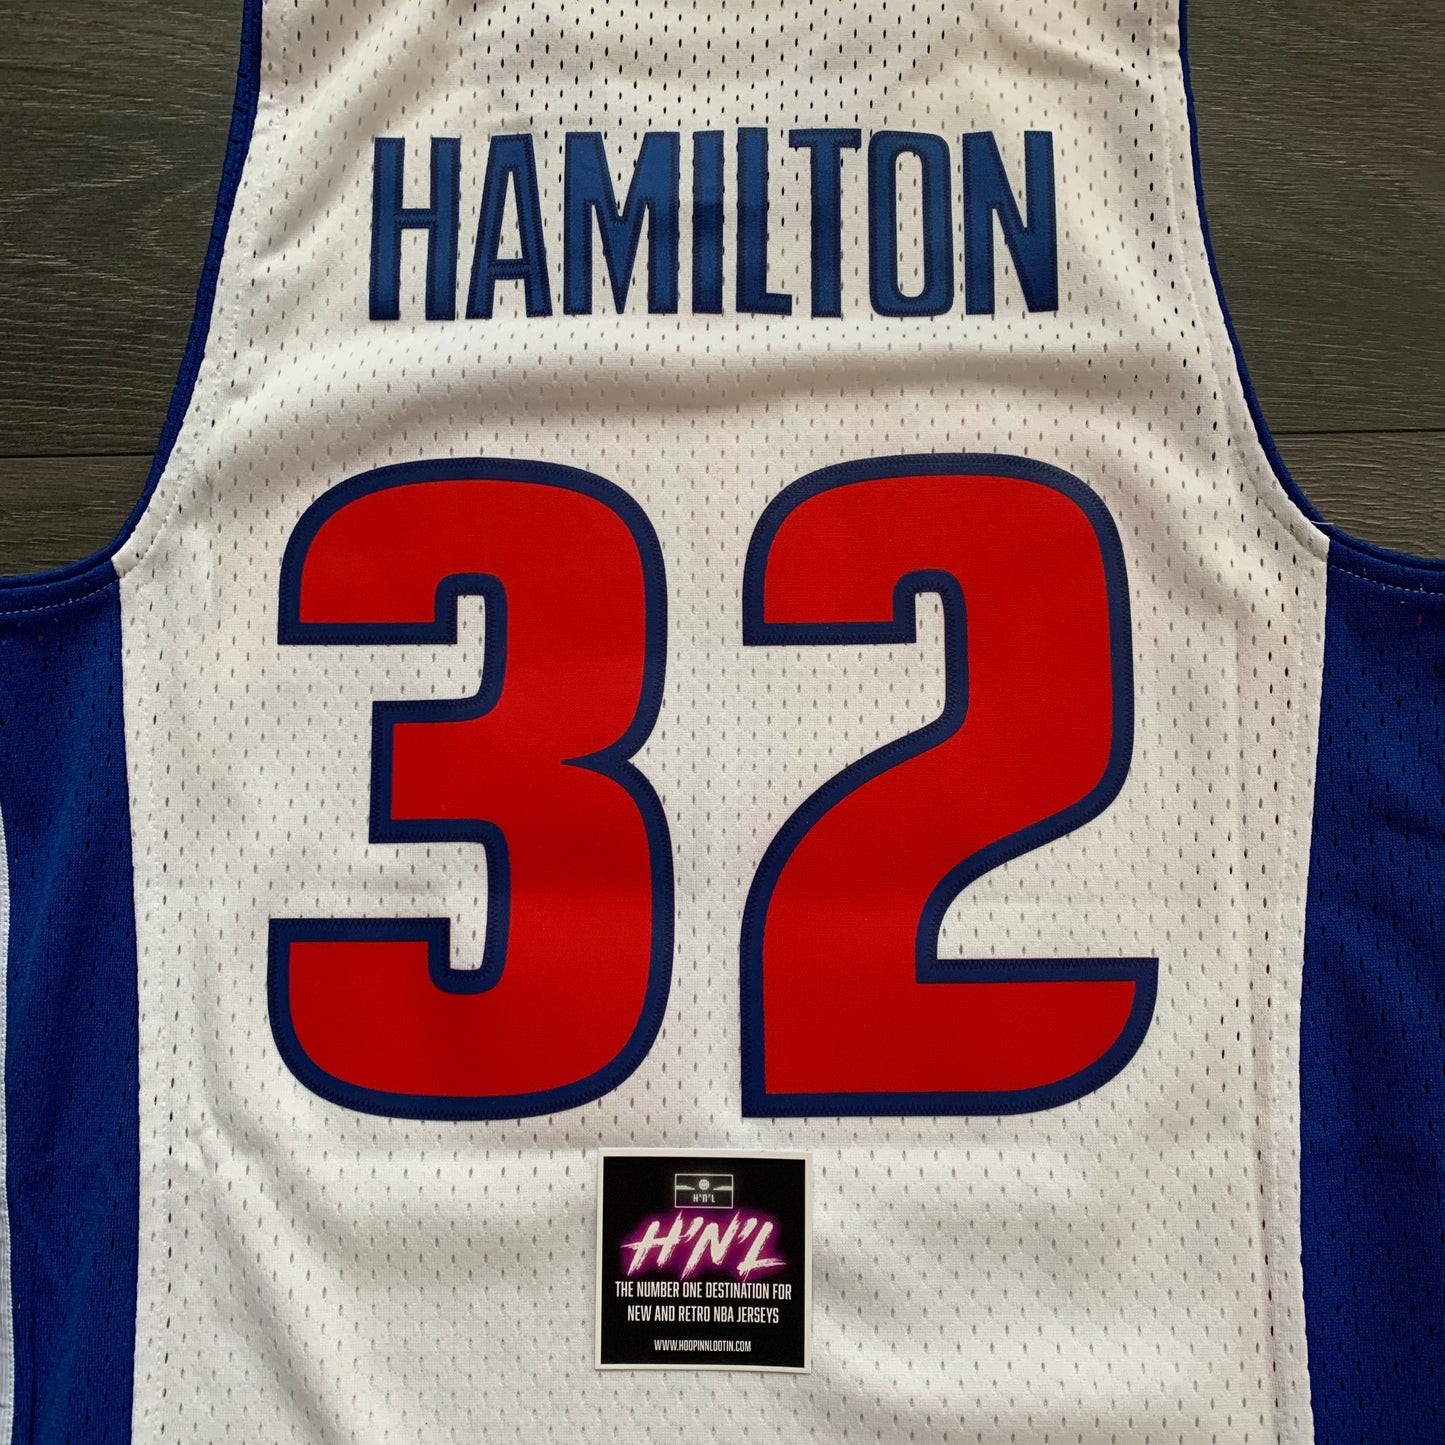 Richard Hamilton Detroit Pistons 03-04 Mitchell & Ness Jersey